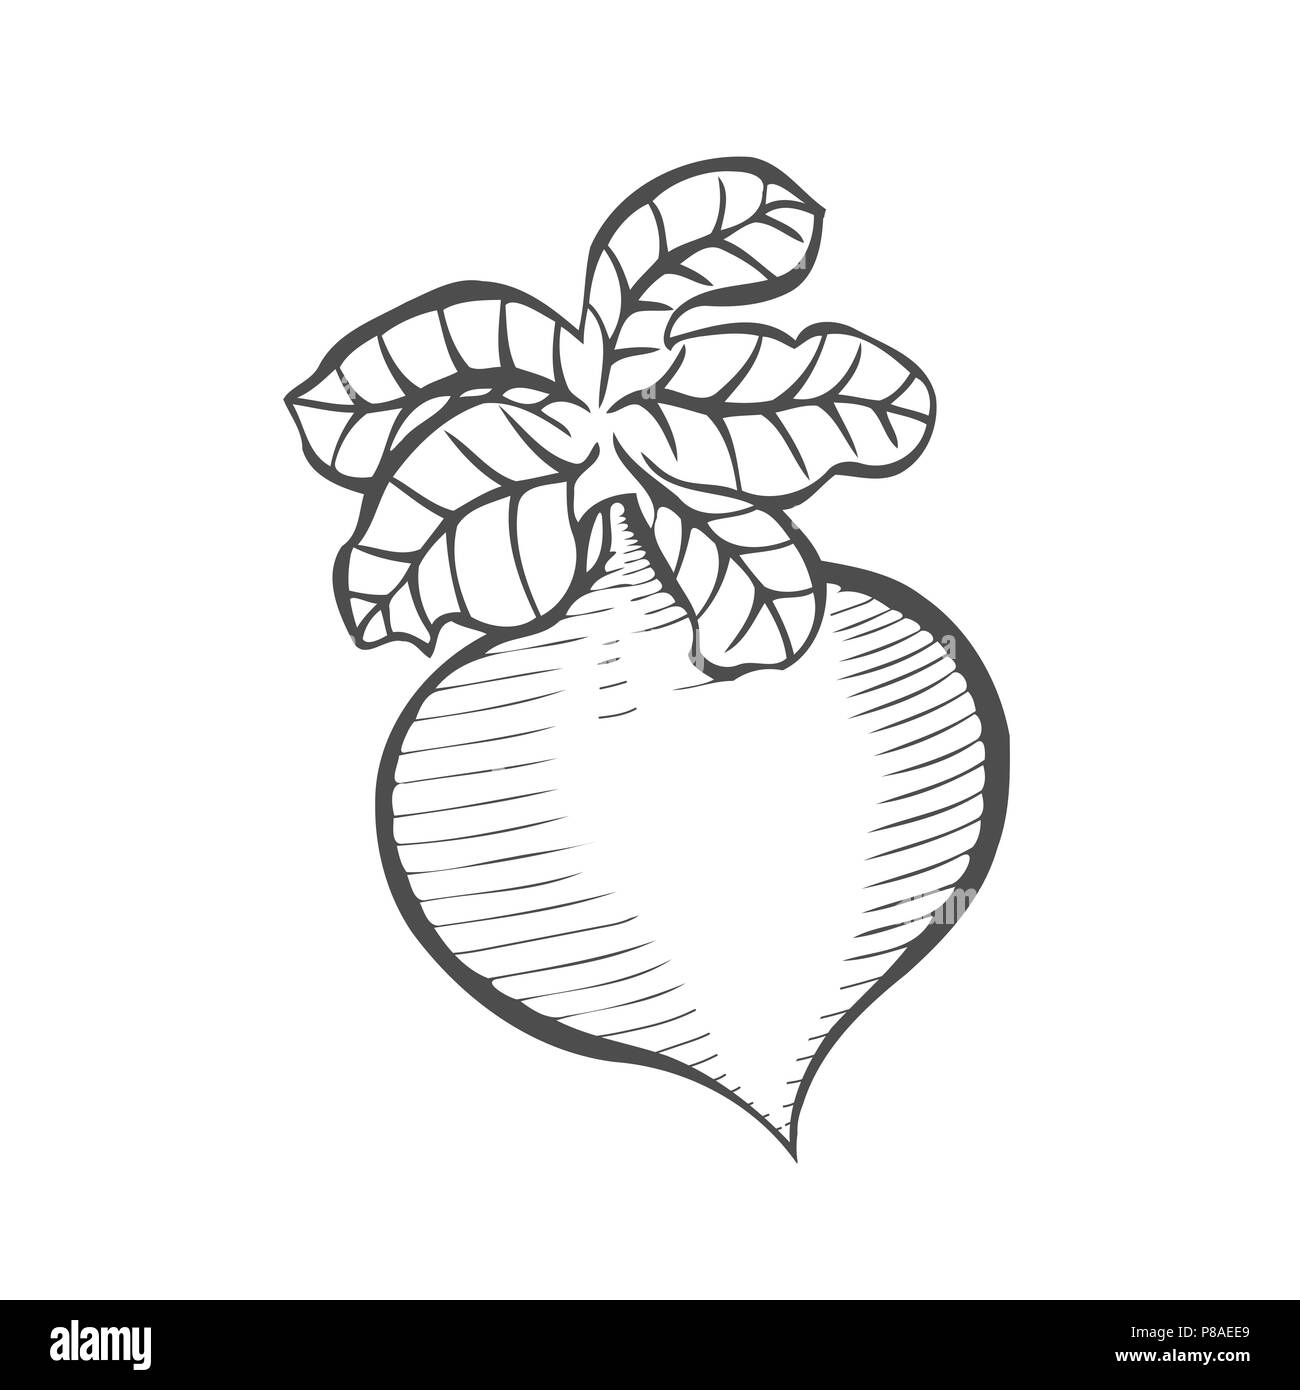 Root und knötchenförmige Gemüse, Illustration Hand gezeichnete Skizze von frischem Lila Rübe oder Brassica rapa Pflanze mit Blättern isoliert auf weißem Hintergrund Stock Vektor